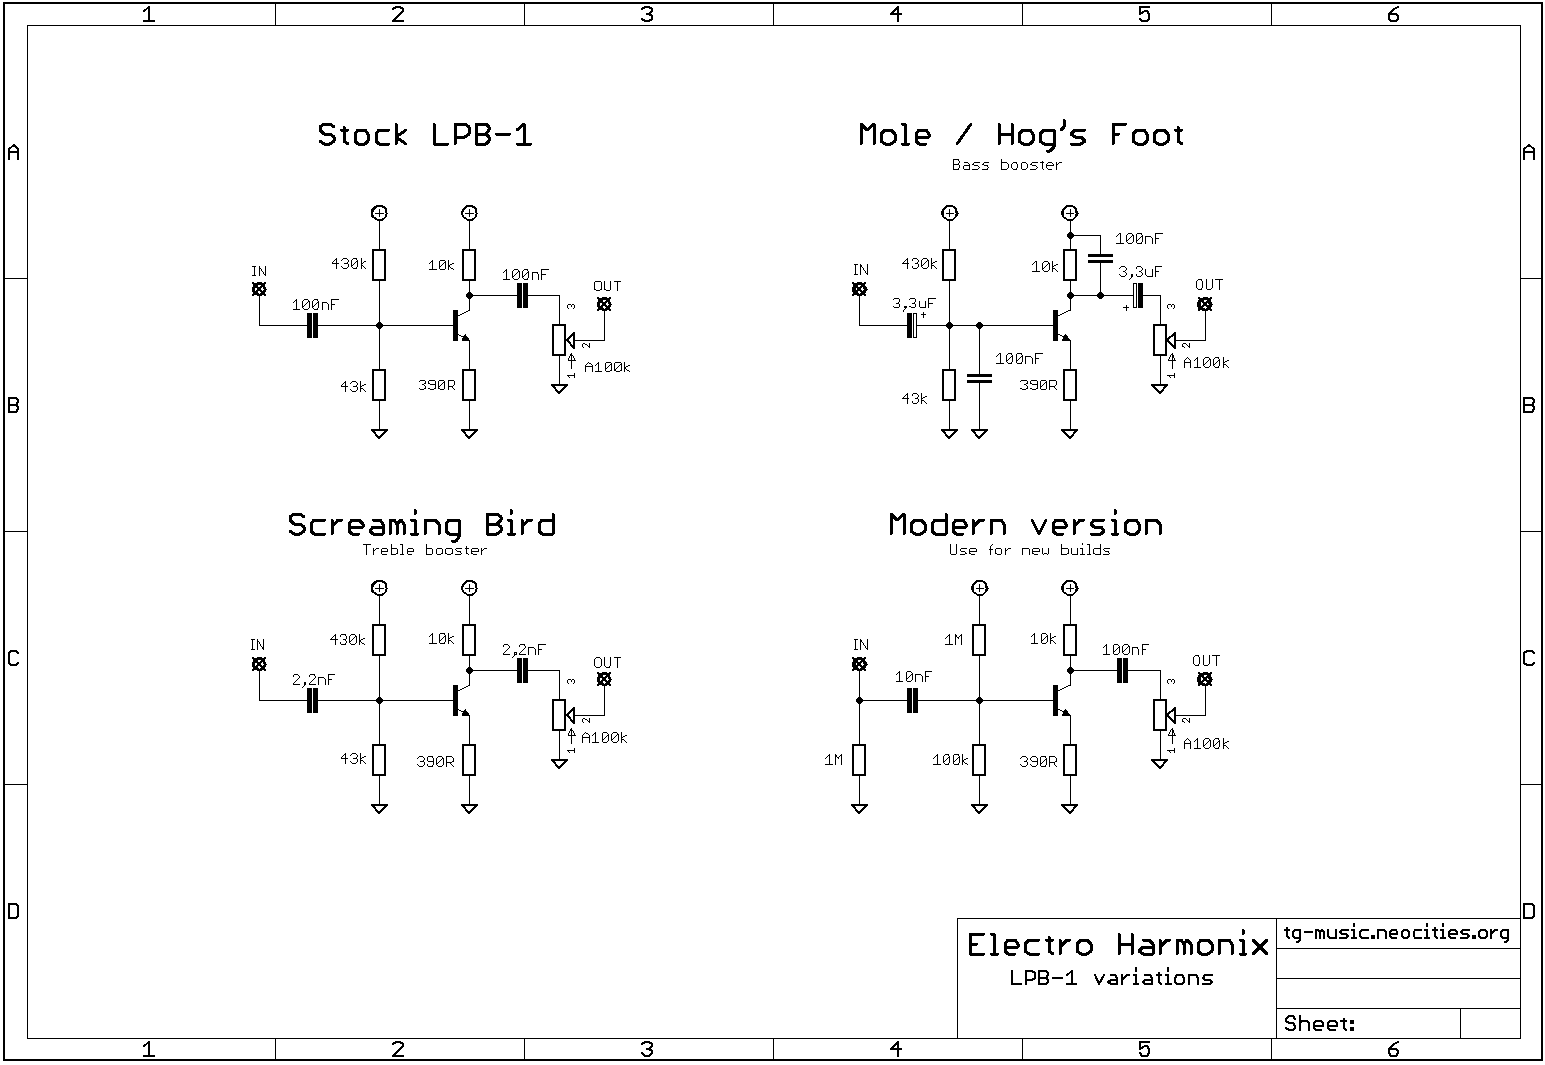 electro harmonix lpb-1 schematic